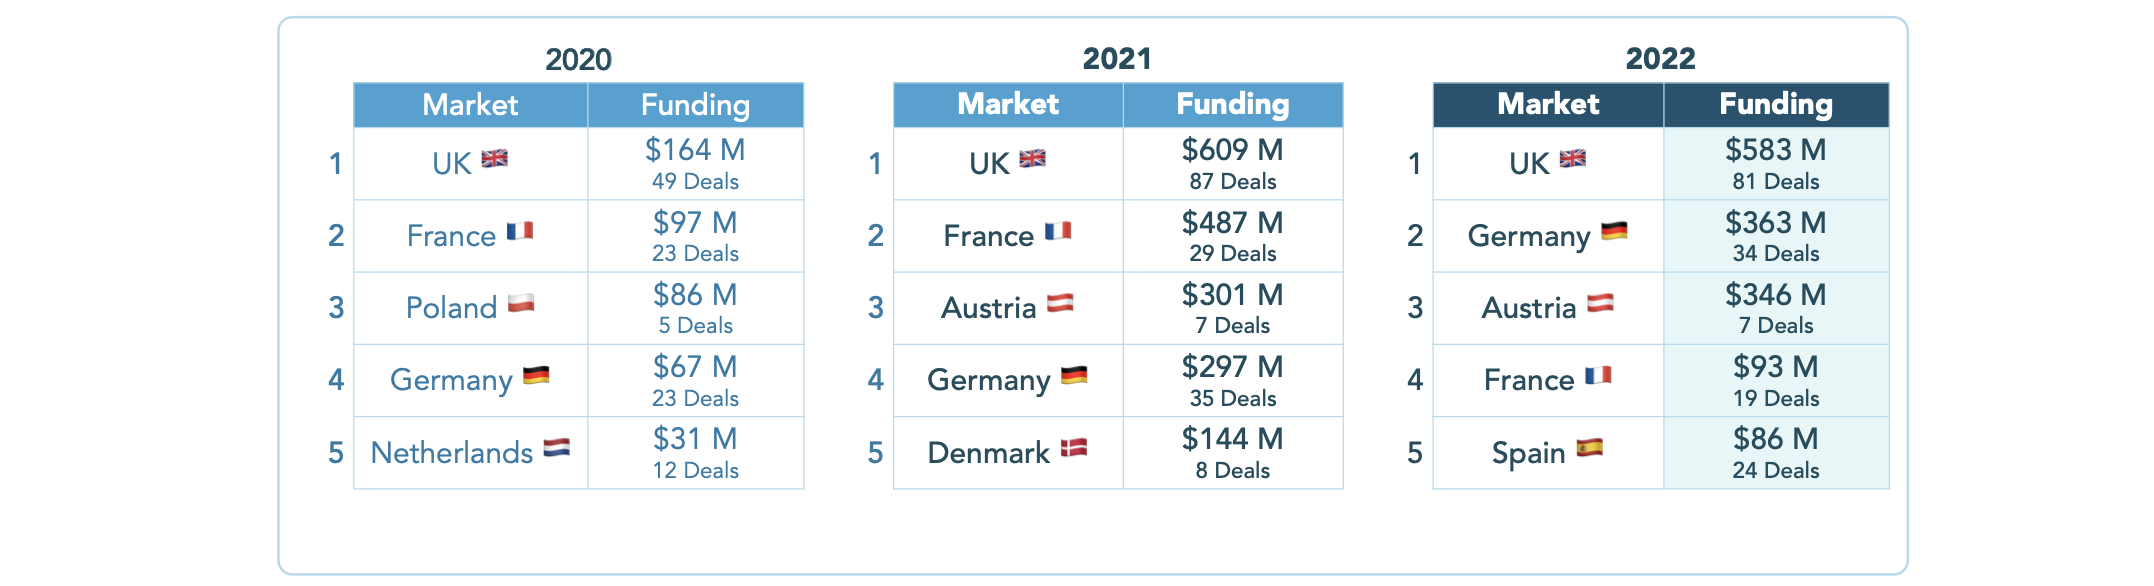 Финансирование образовательных технологий в Европе по рынкам.  Кредиты изображения: Britei Ventures